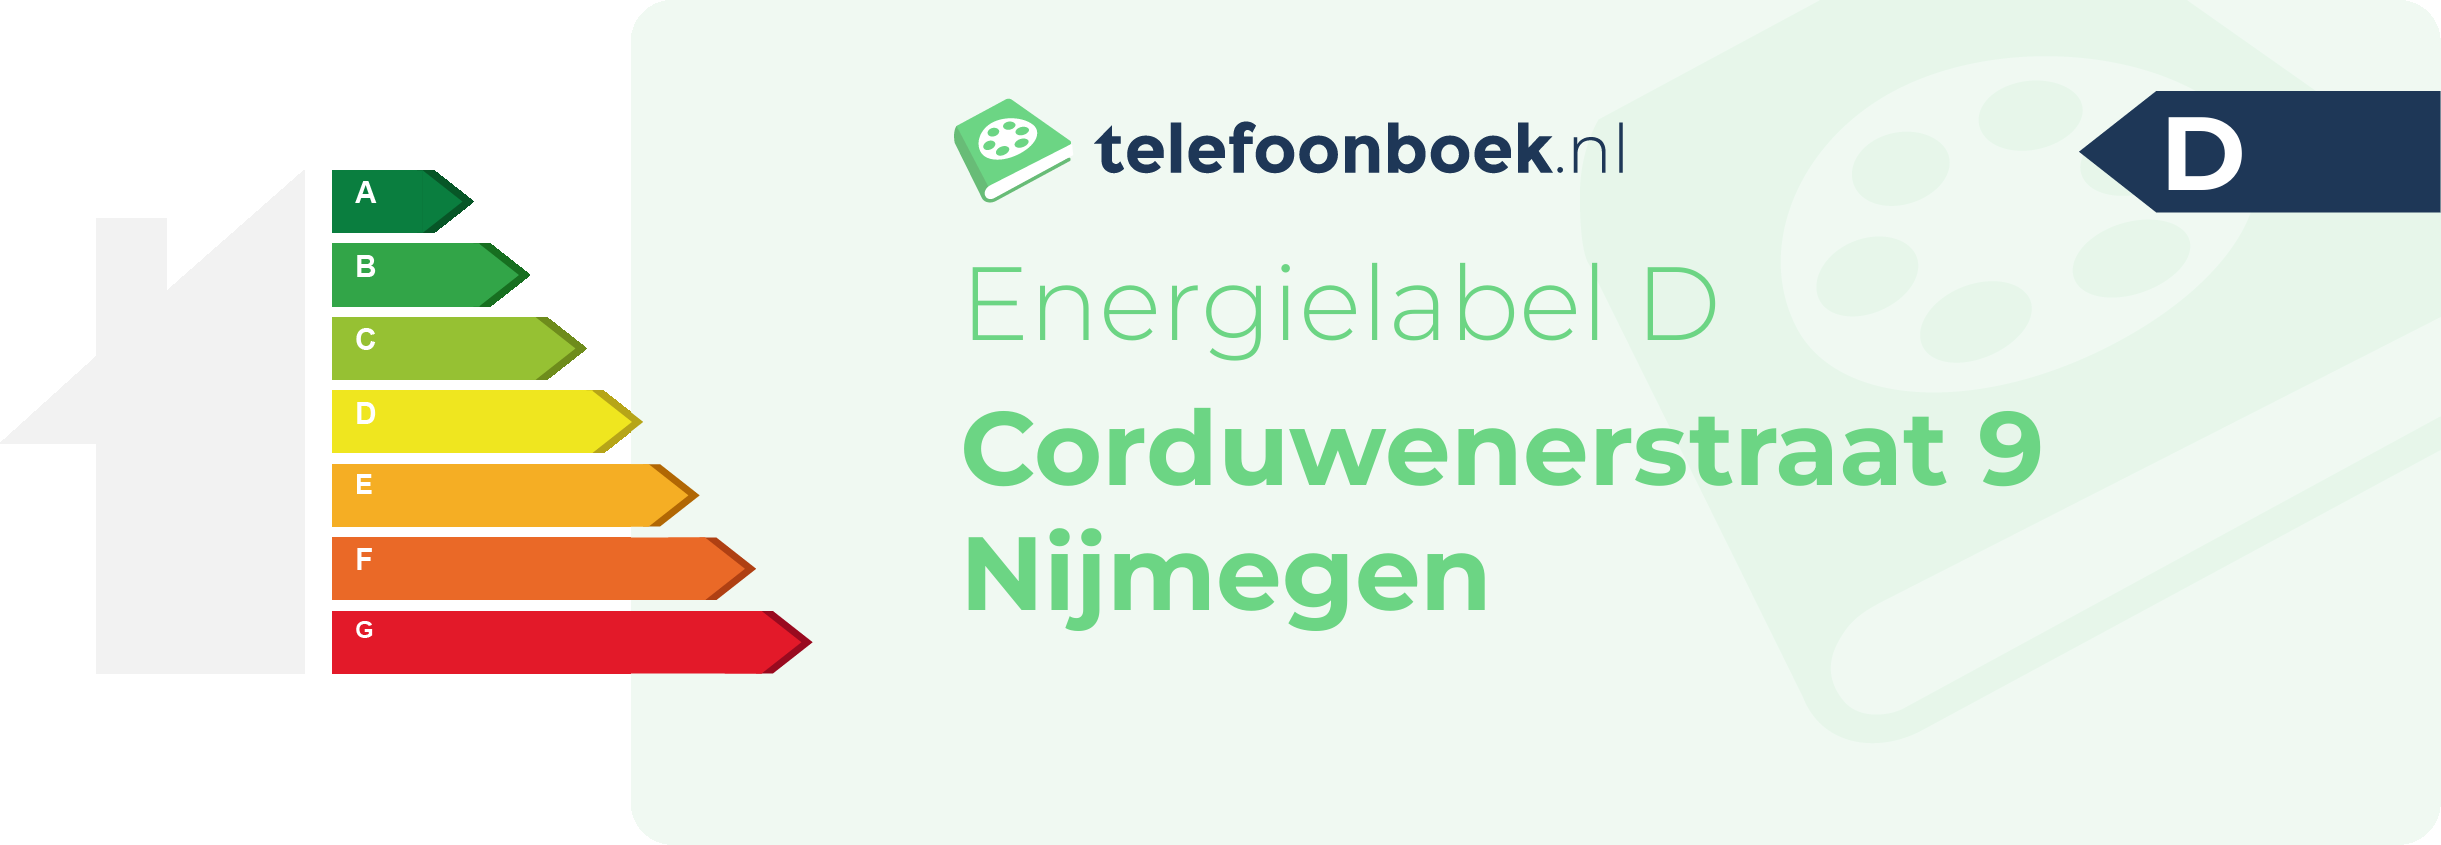 Energielabel Corduwenerstraat 9 Nijmegen